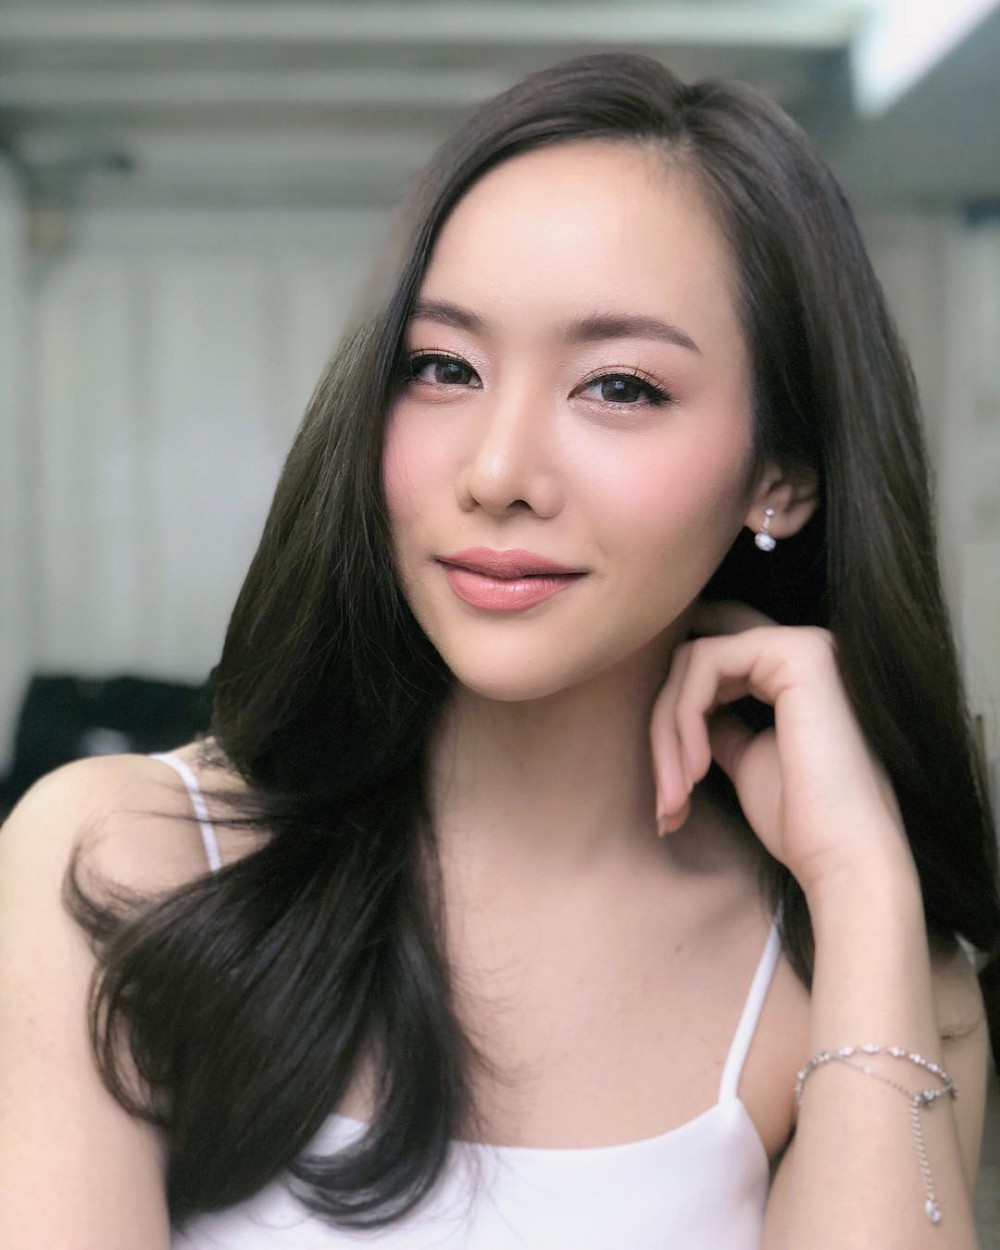 อัพเดตความสวยของ เพตี้อิ โฮการิ นักแสดงสาวลูกครึ่งไทย-ญี่ปุ่น ดับร้อนกันหน่อย!! 3